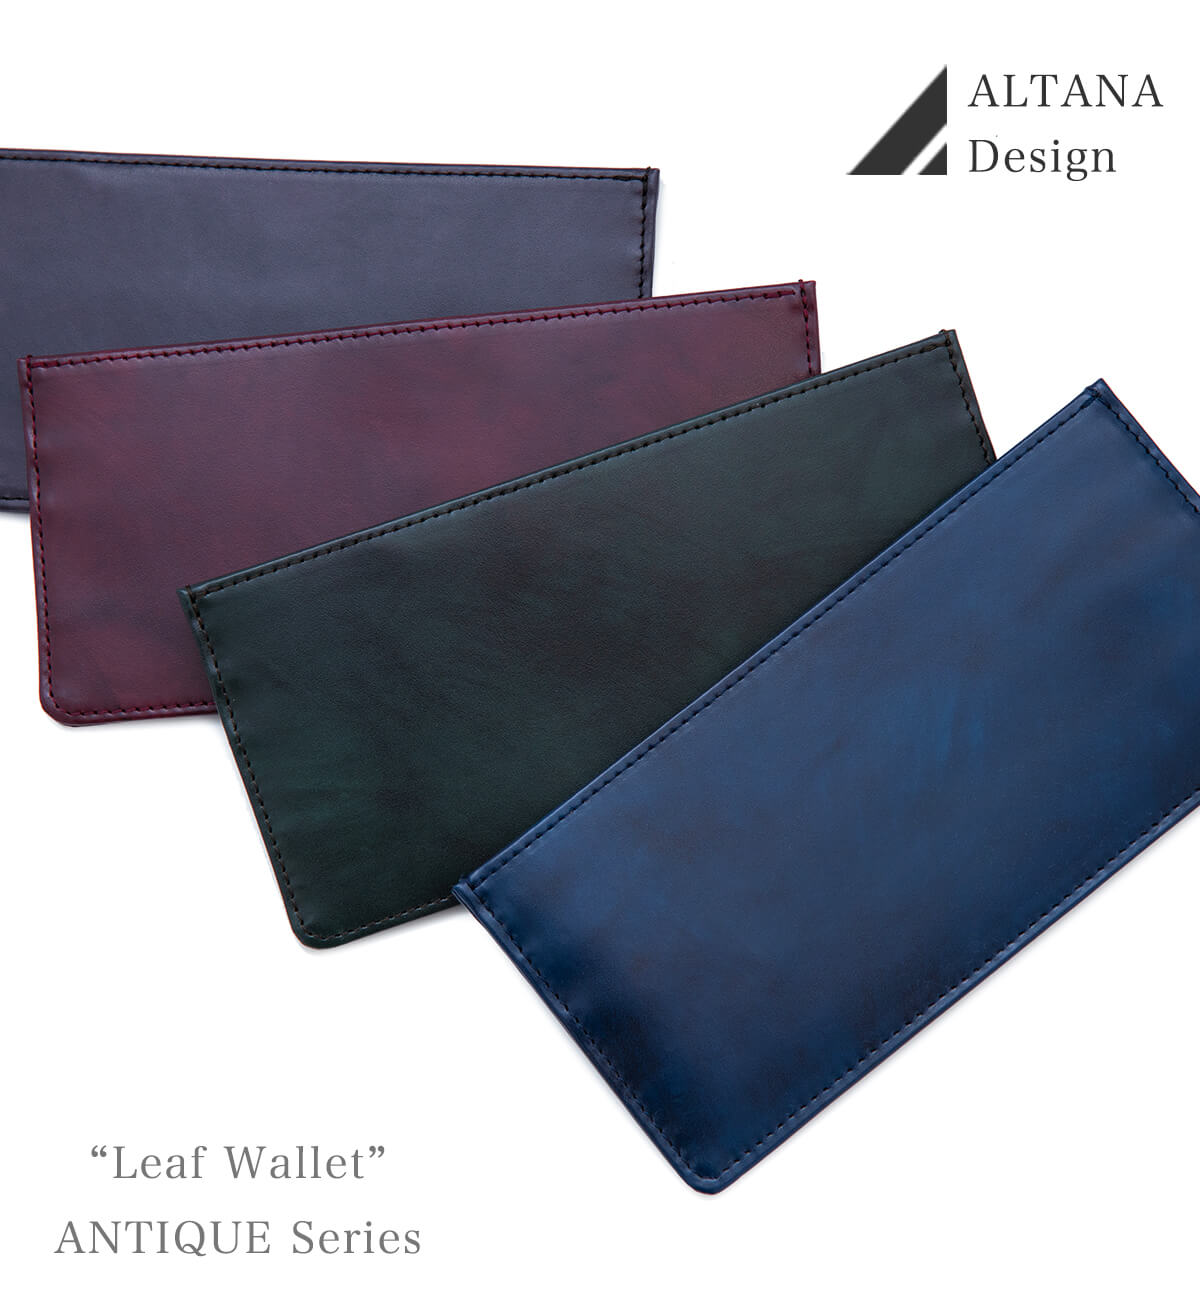 リーフウォレットRZ/極薄型財布【4月22日出荷分】 | オルタナデザイン 